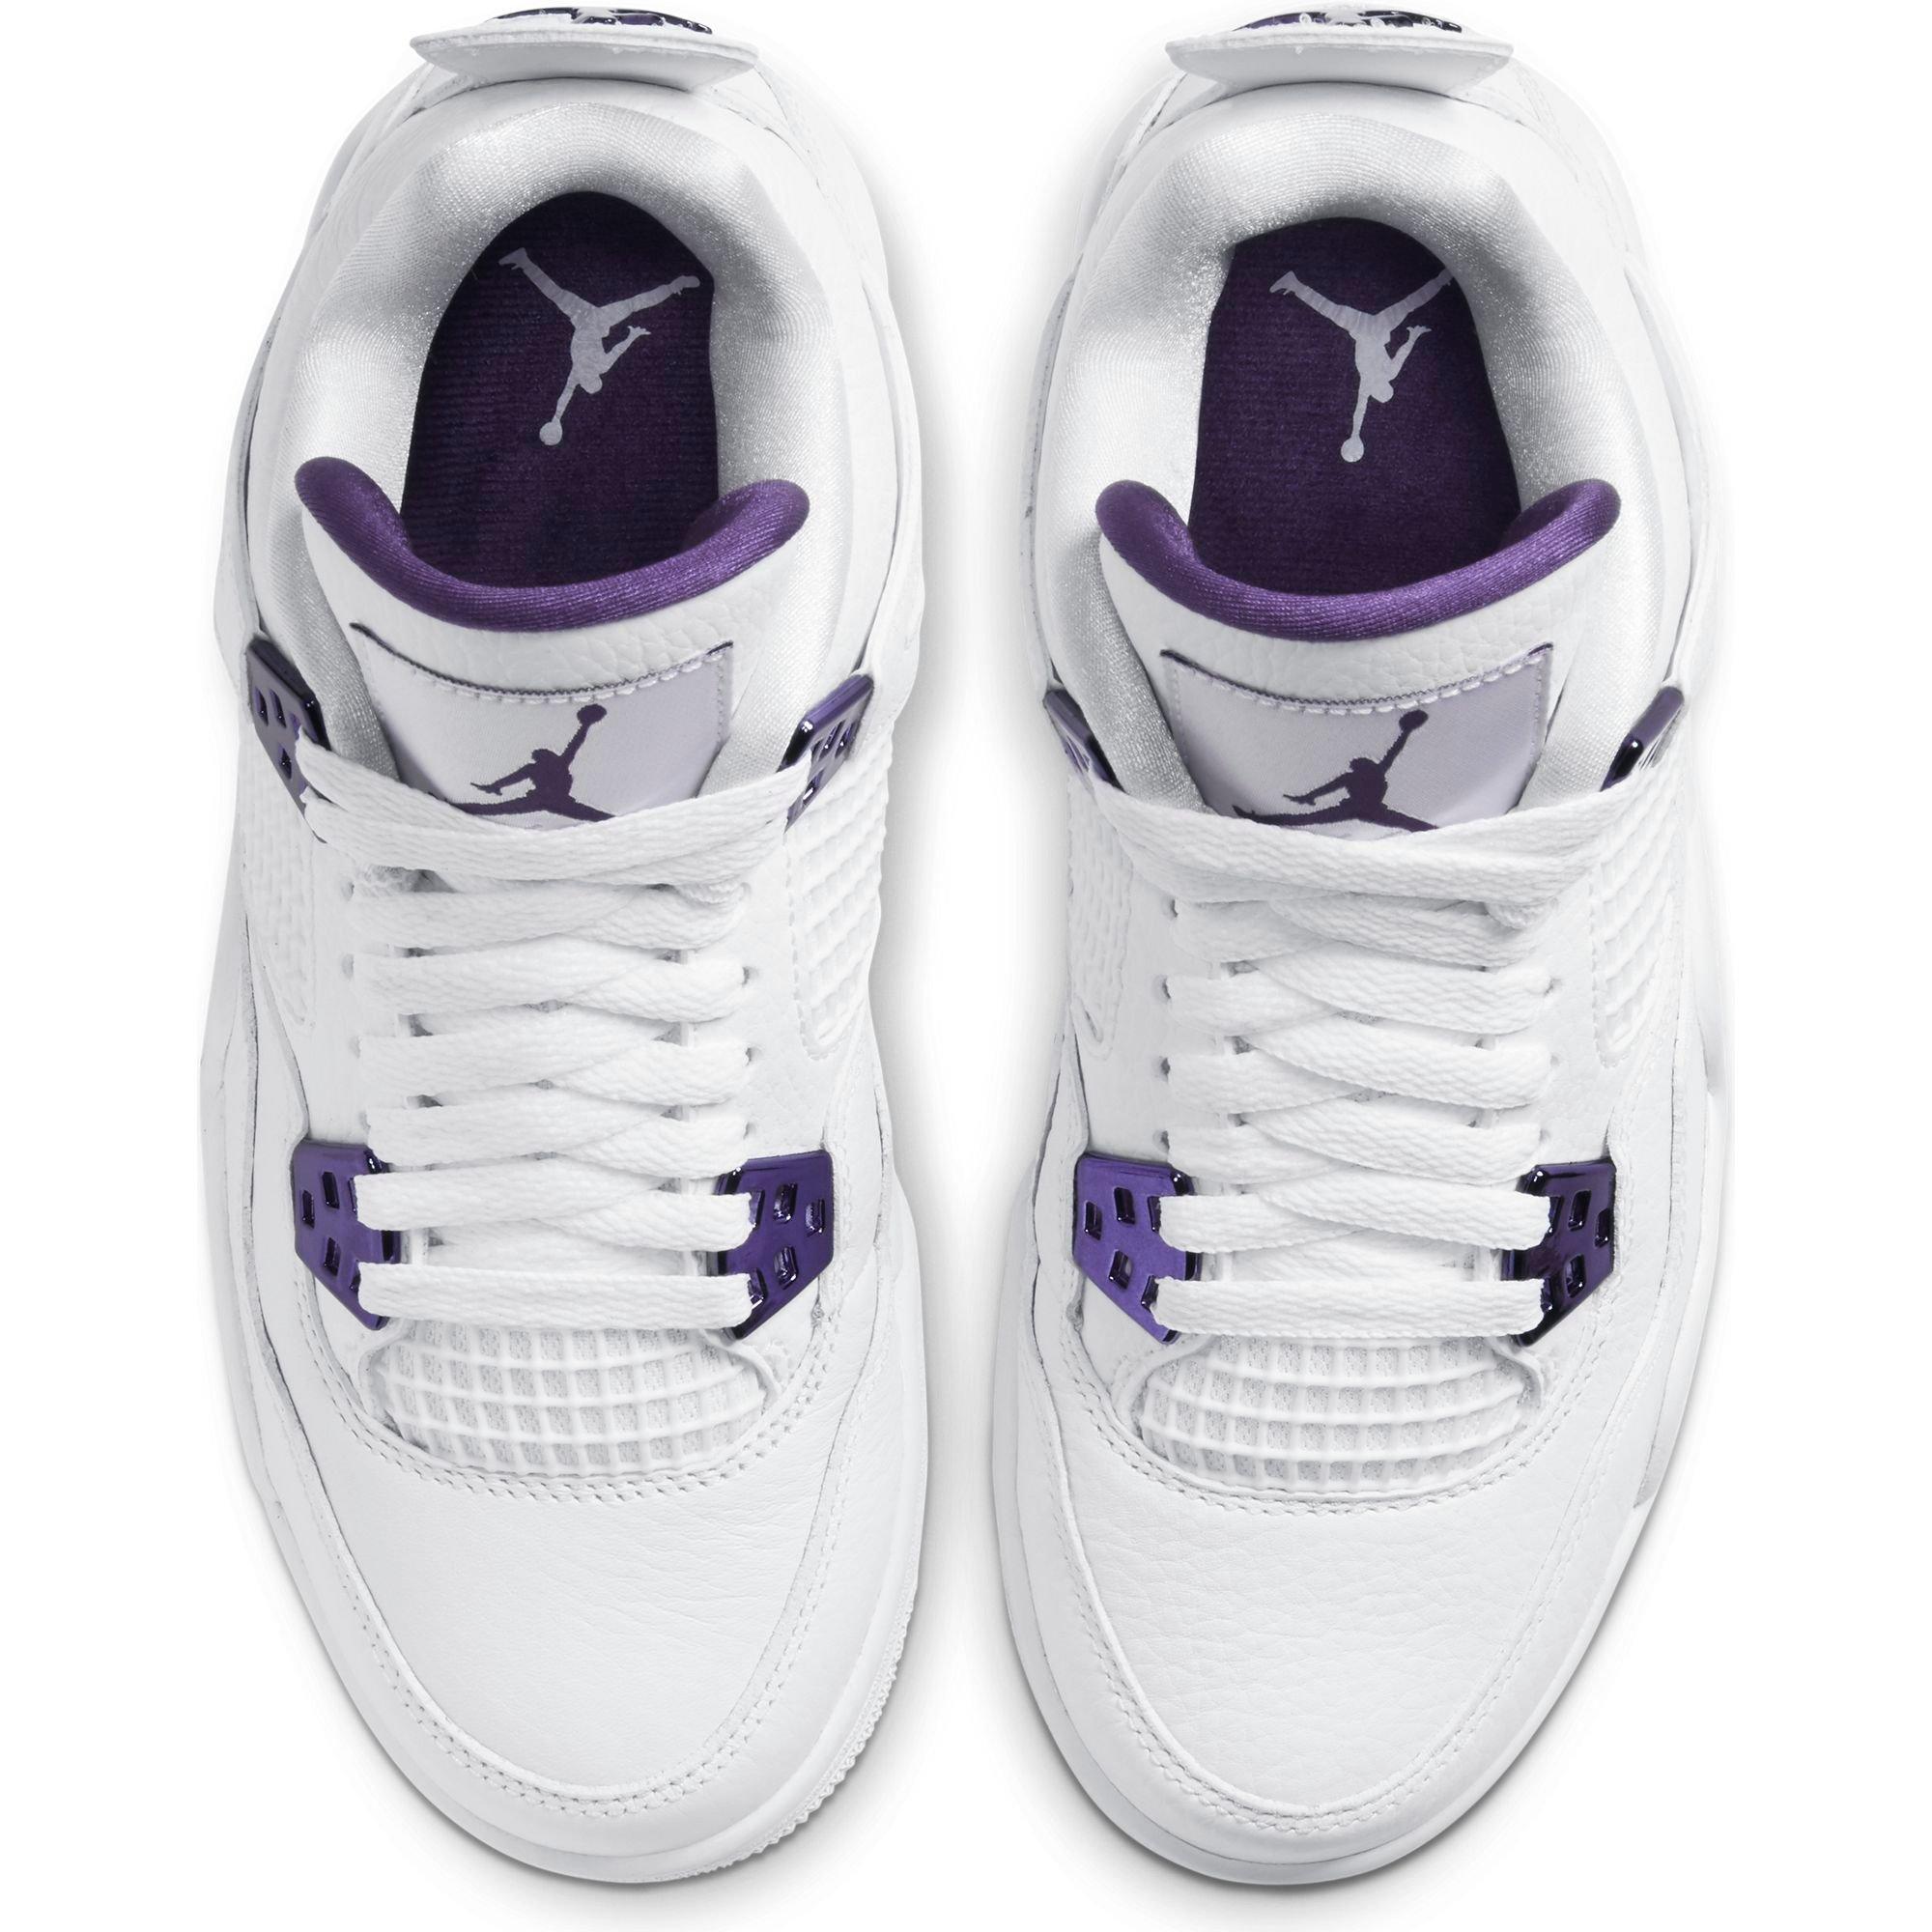 Sneakers Release – Jordan 4 Retro 